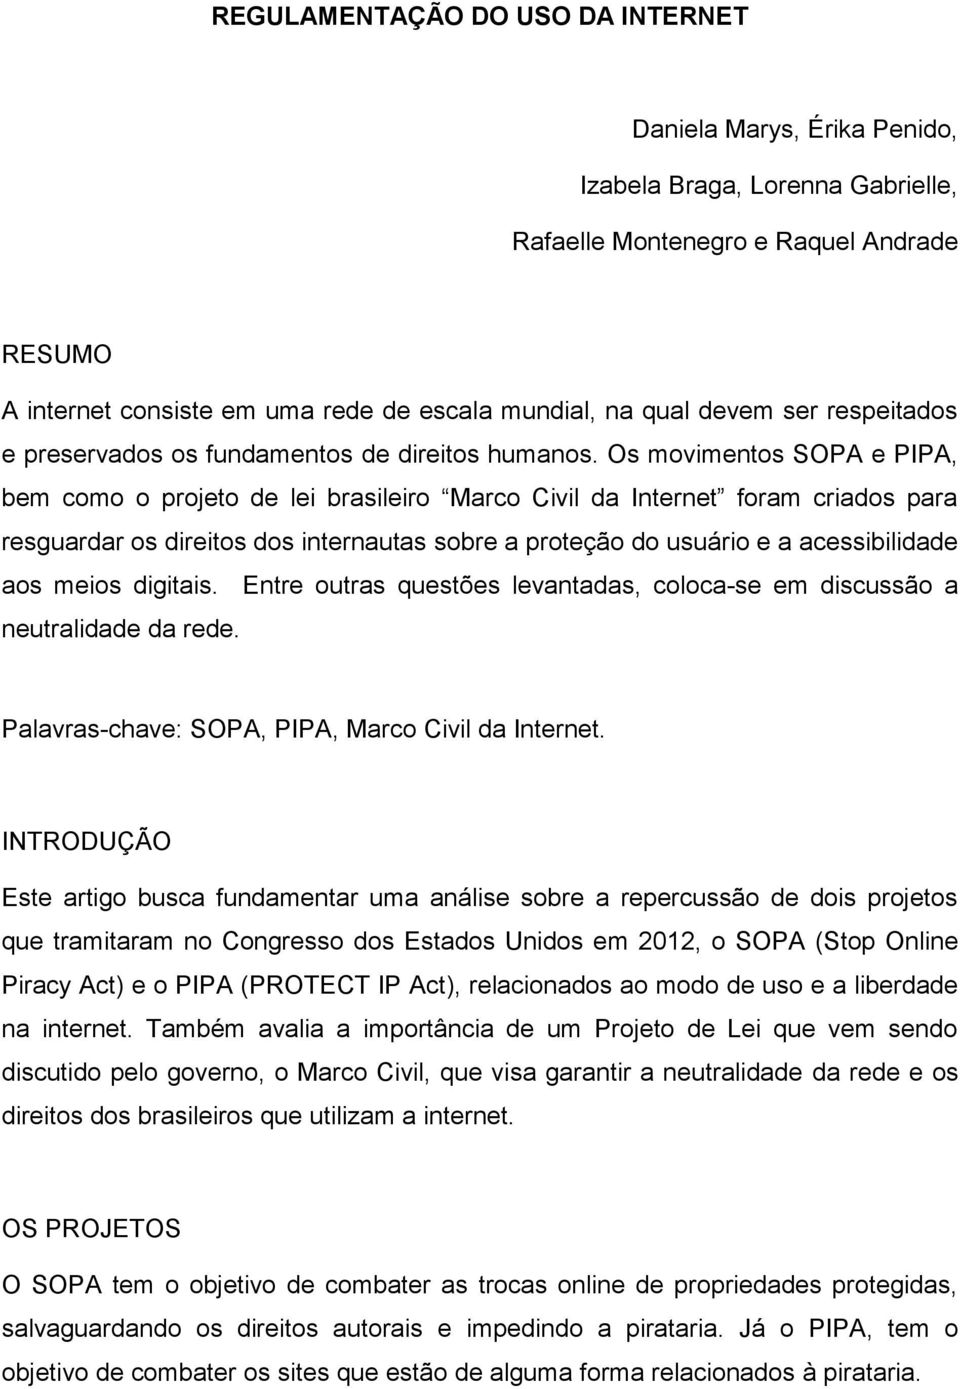 Os movimentos SOPA e PIPA, bem como o projeto de lei brasileiro Marco Civil da Internet foram criados para resguardar os direitos dos internautas sobre a proteção do usuário e a acessibilidade aos